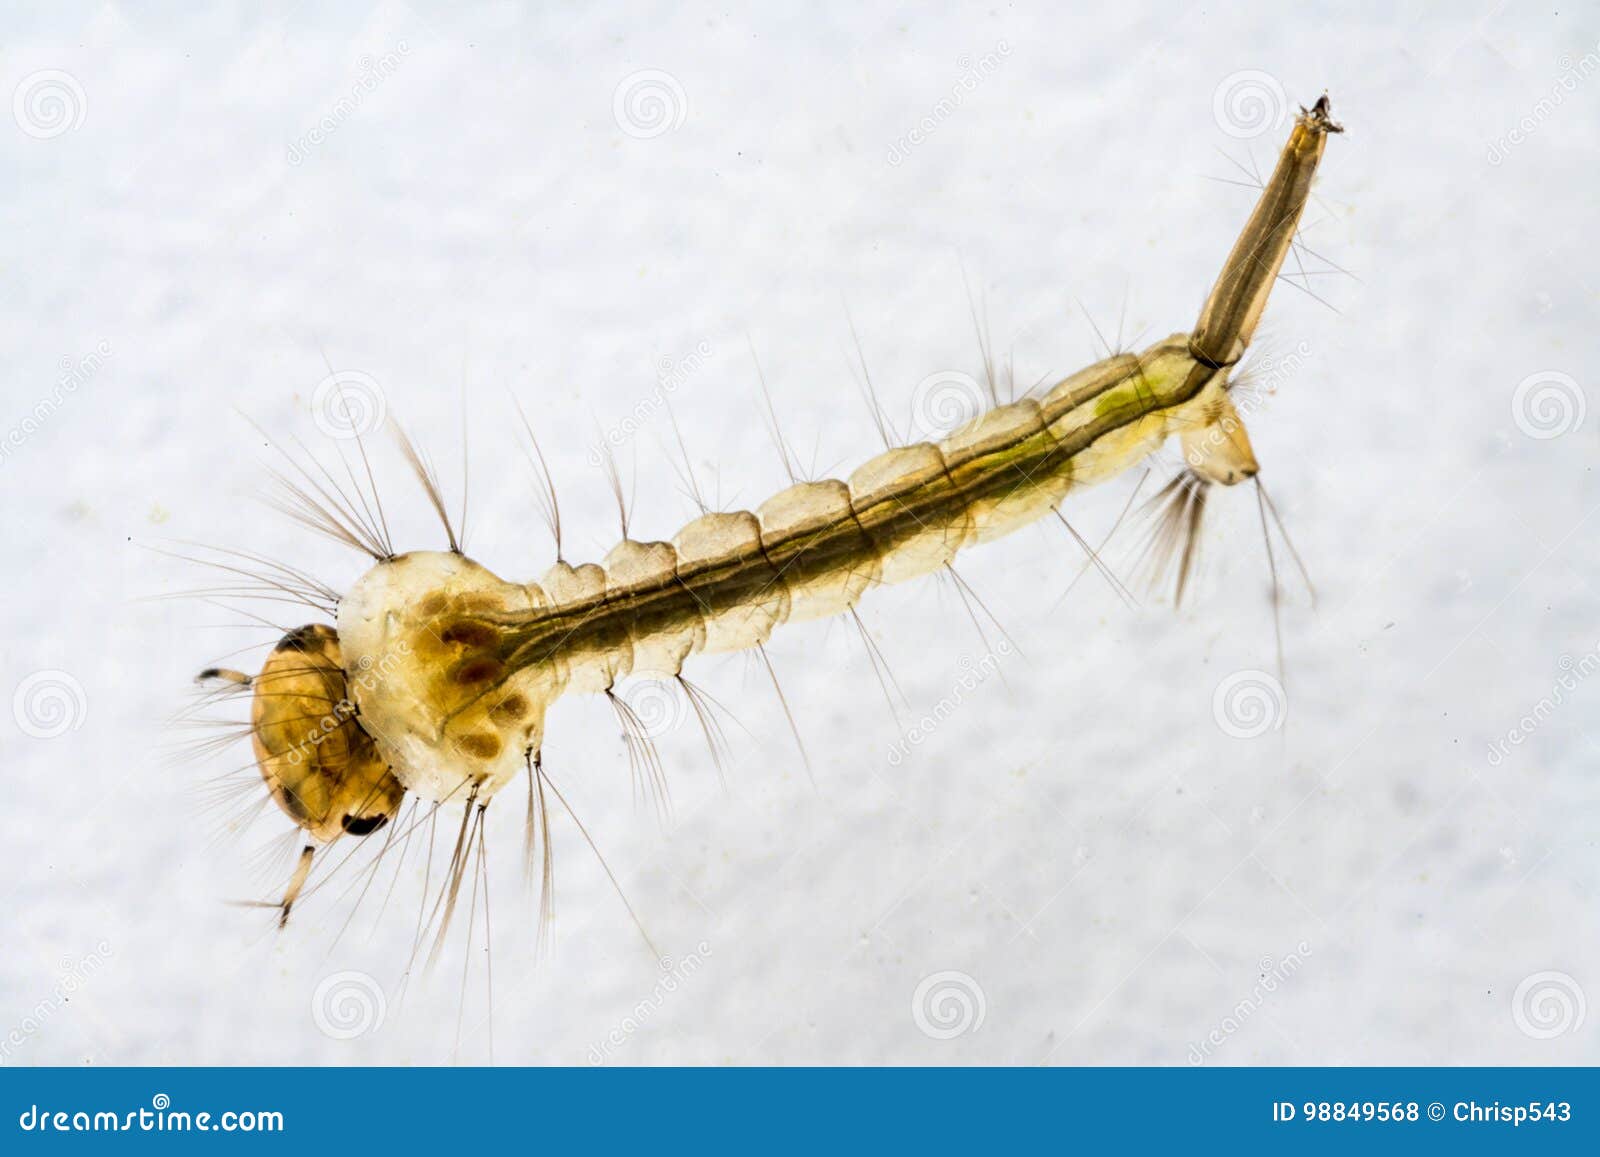 macro-da-larva-do-mosquito-98849568.jpg